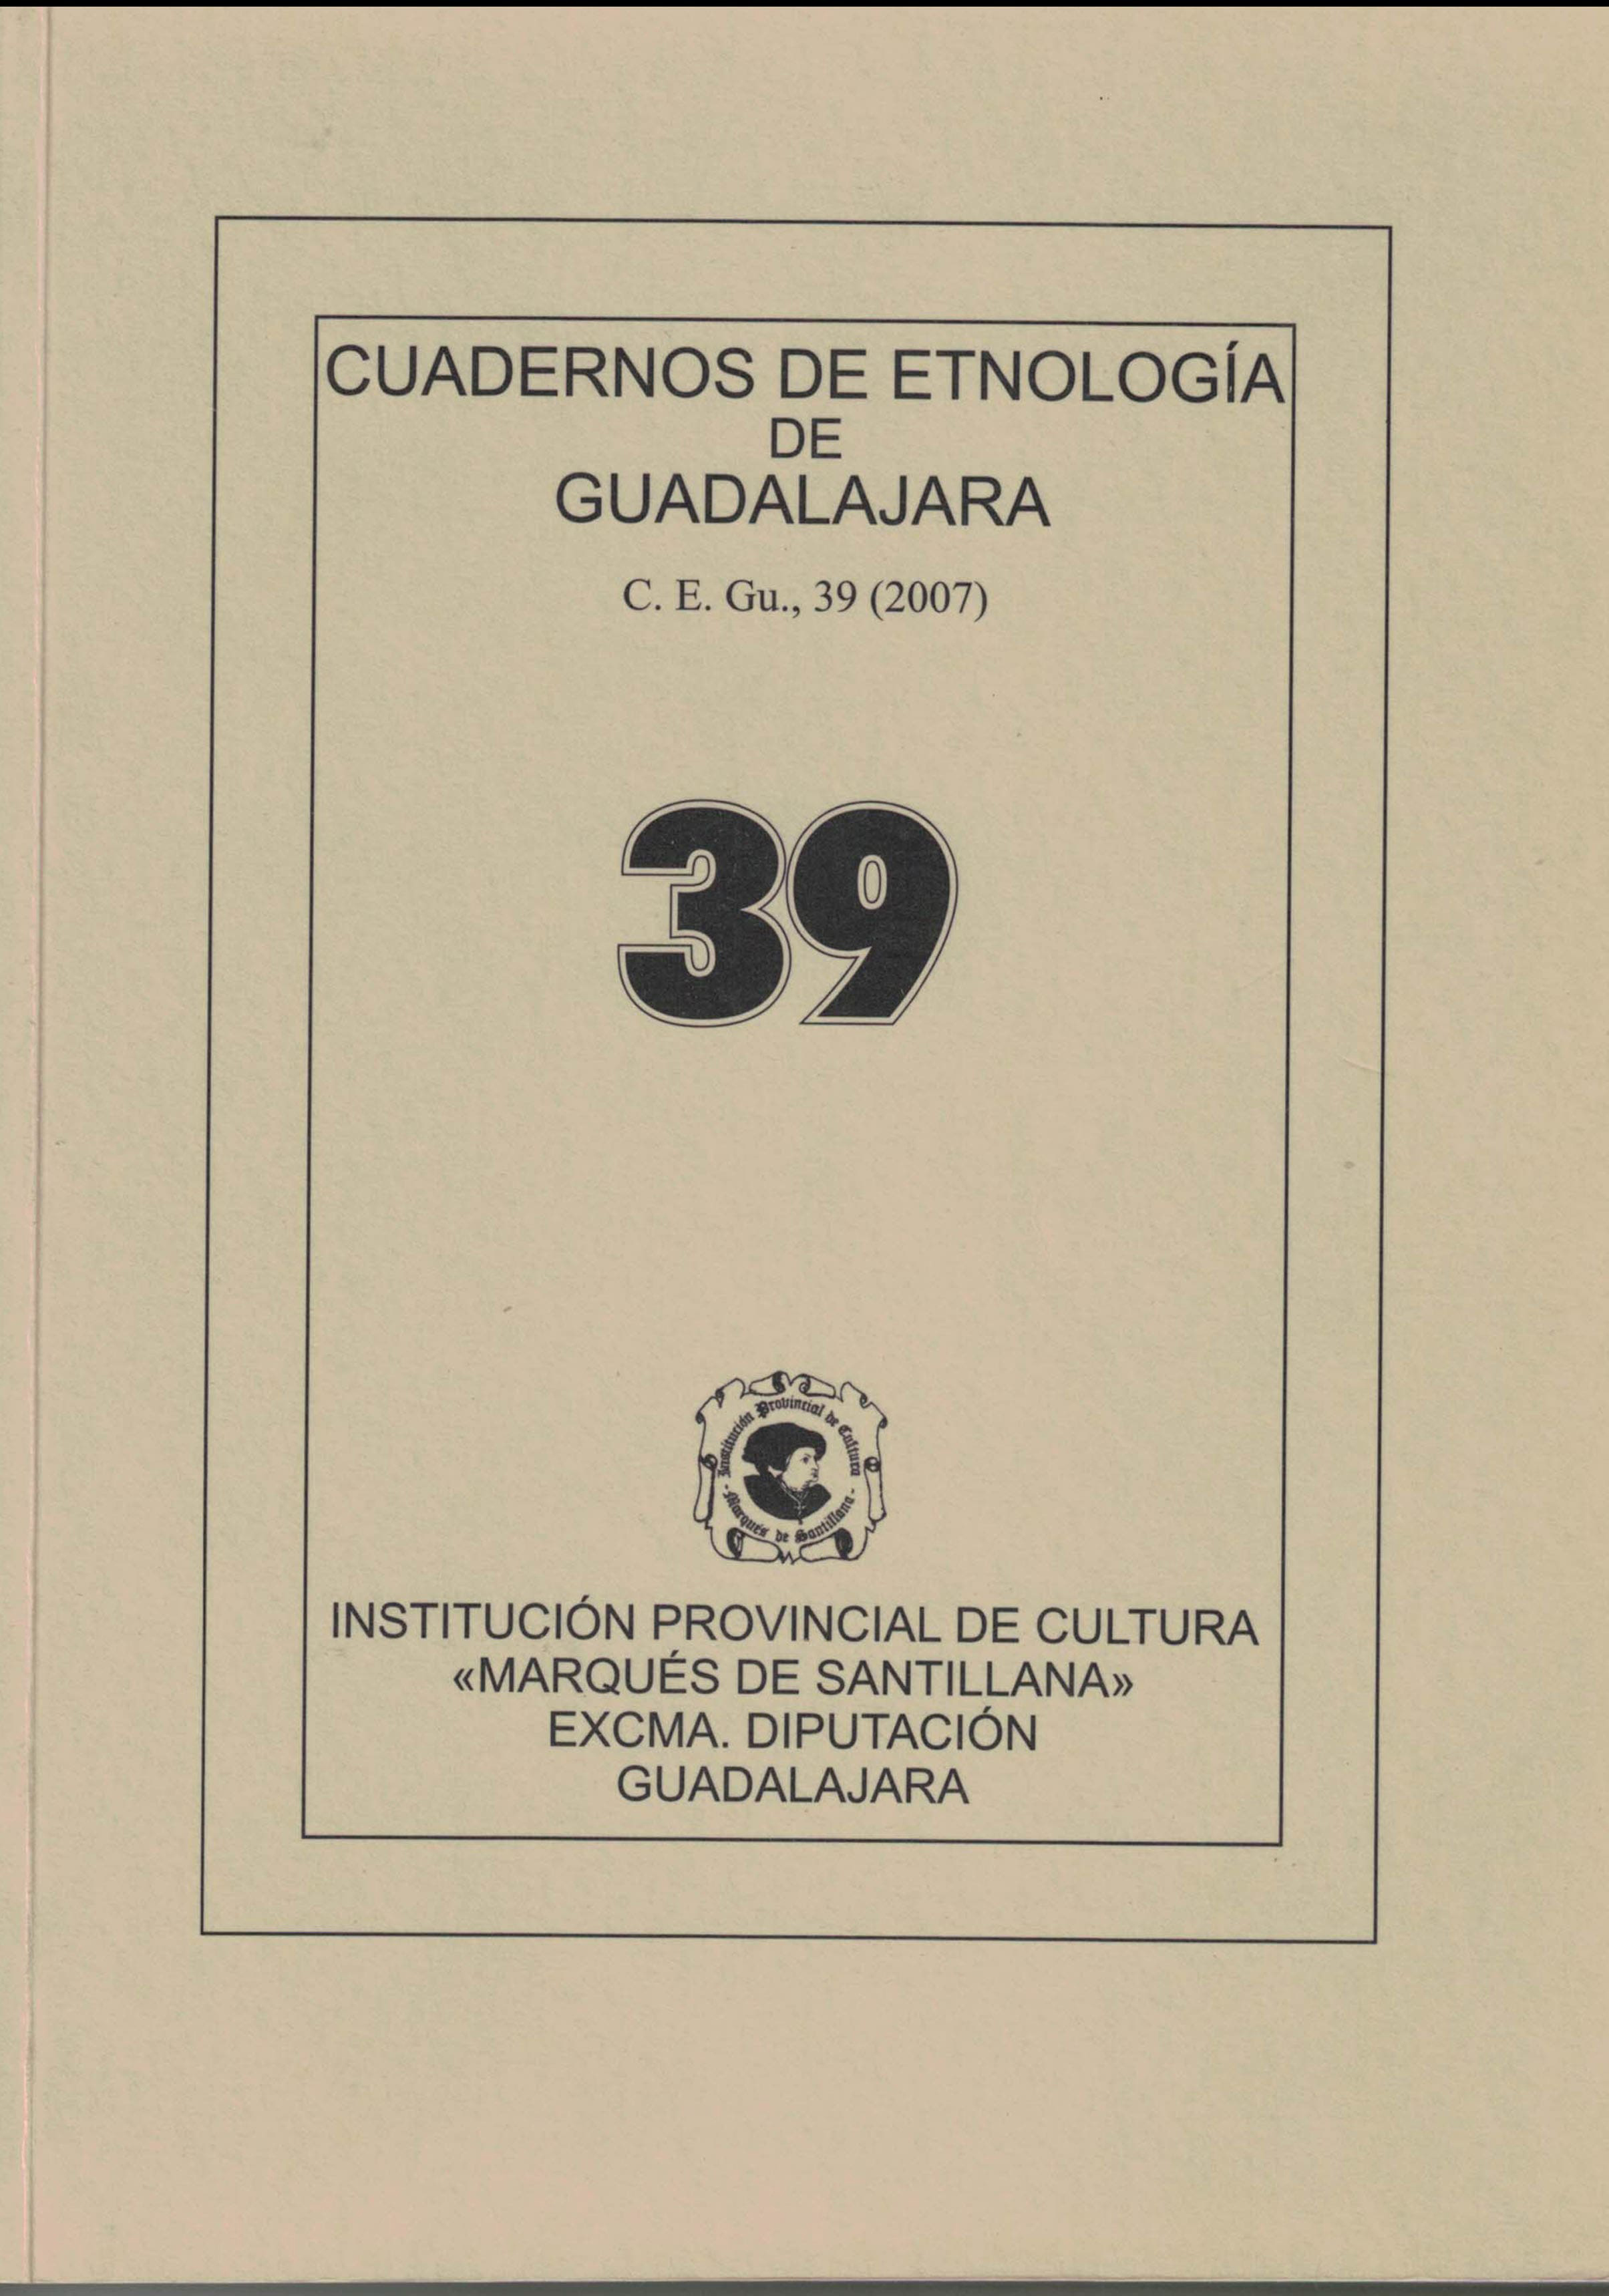 Cuadernos de Etnologia de Guadalajara 39